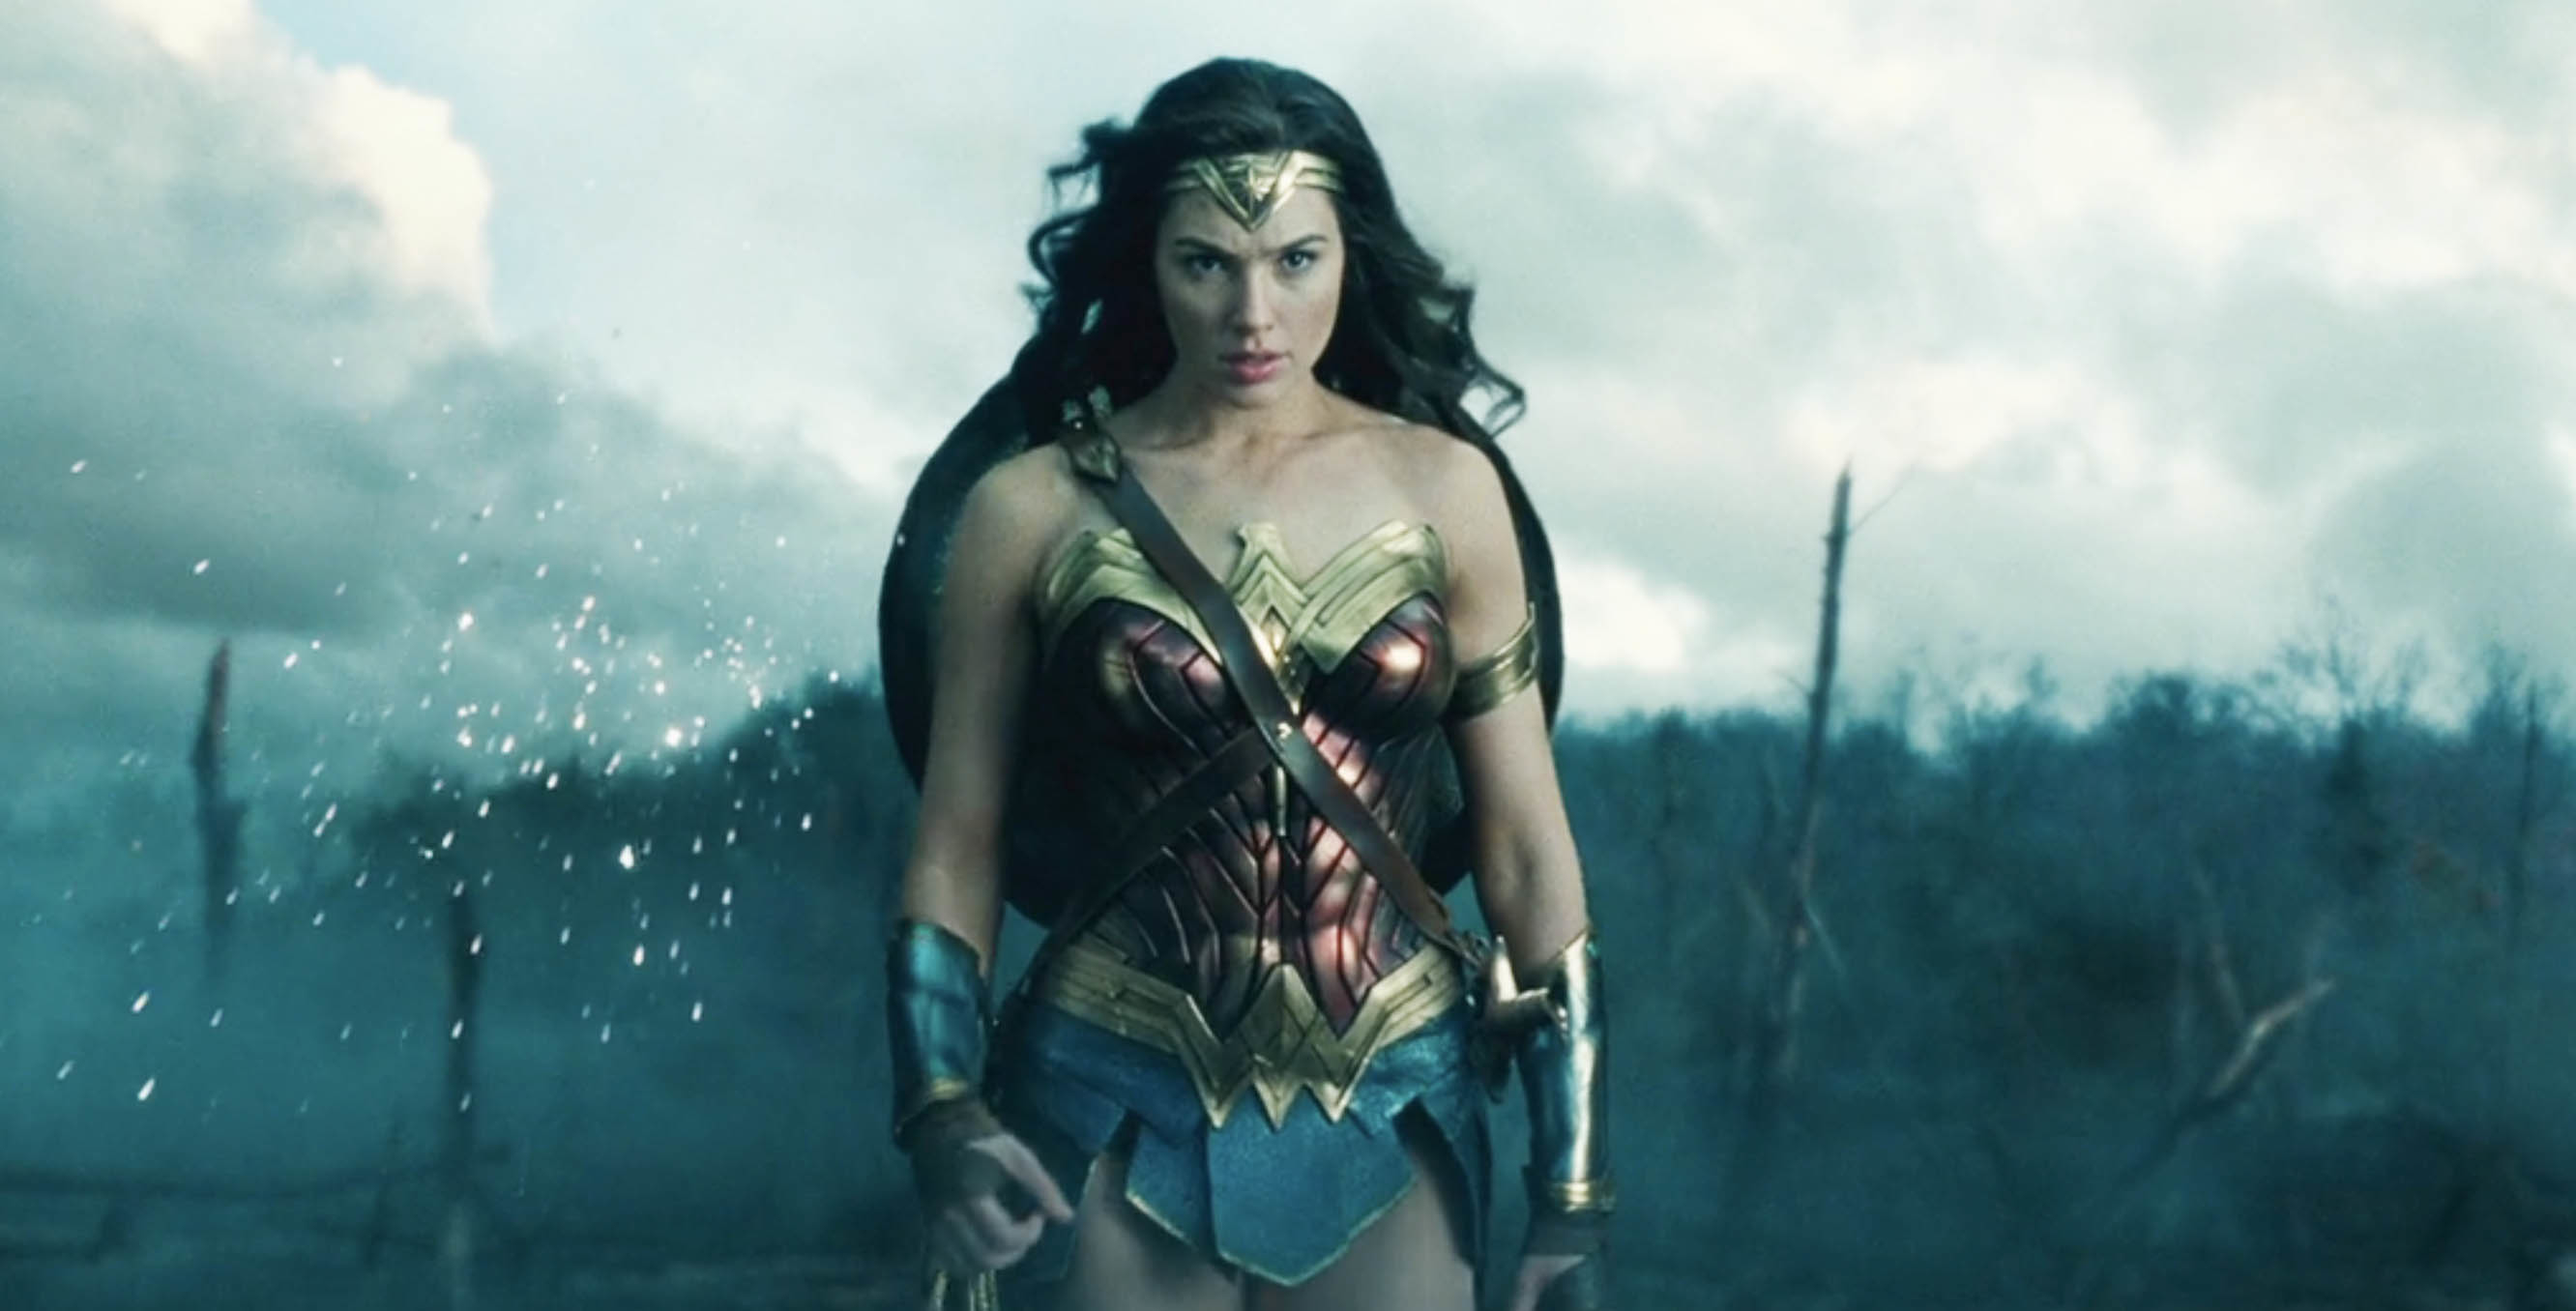 Gal Gadot as Wonder Woman walking through a battlefield